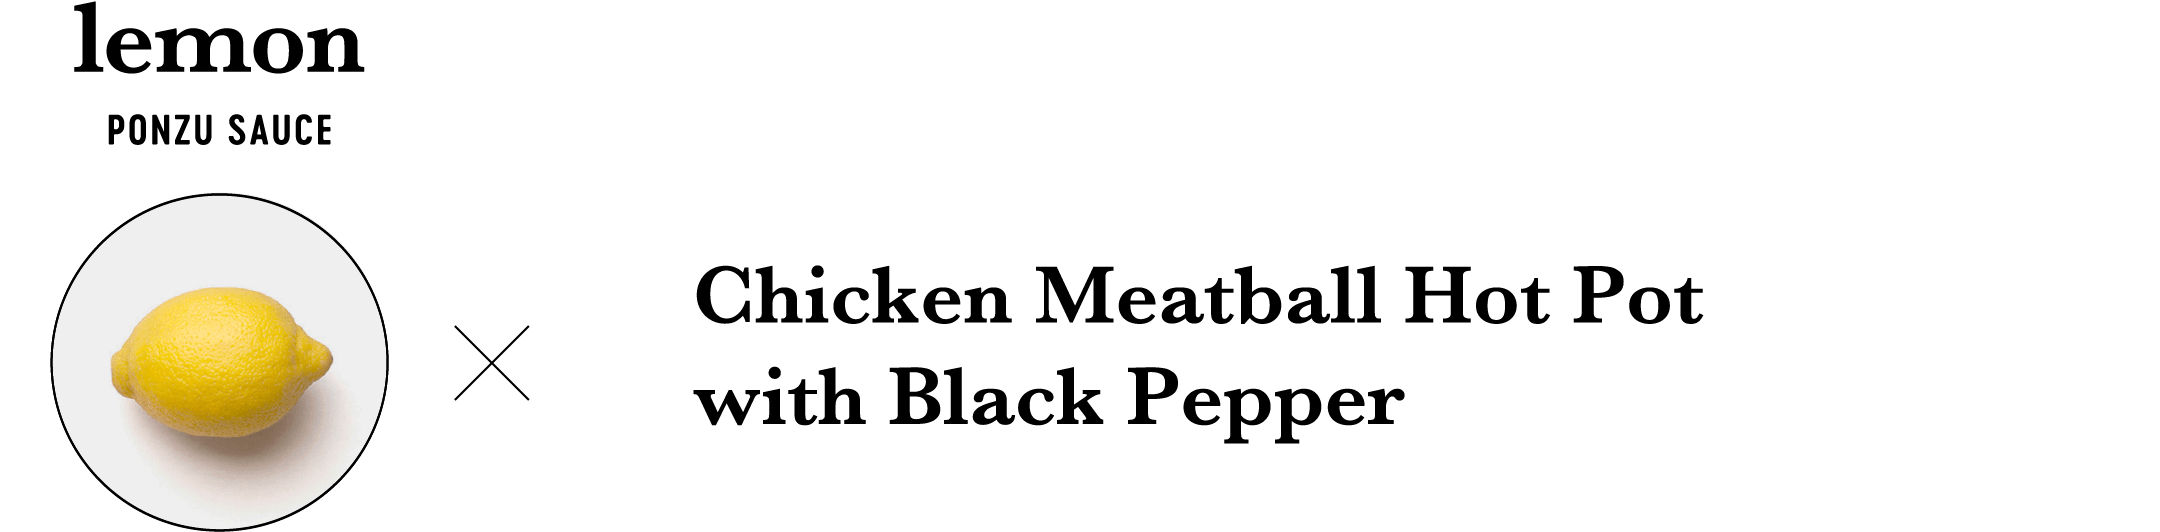 lemon PONZU SAUCE Chicken Meatball Hot Pot with Black Pepper